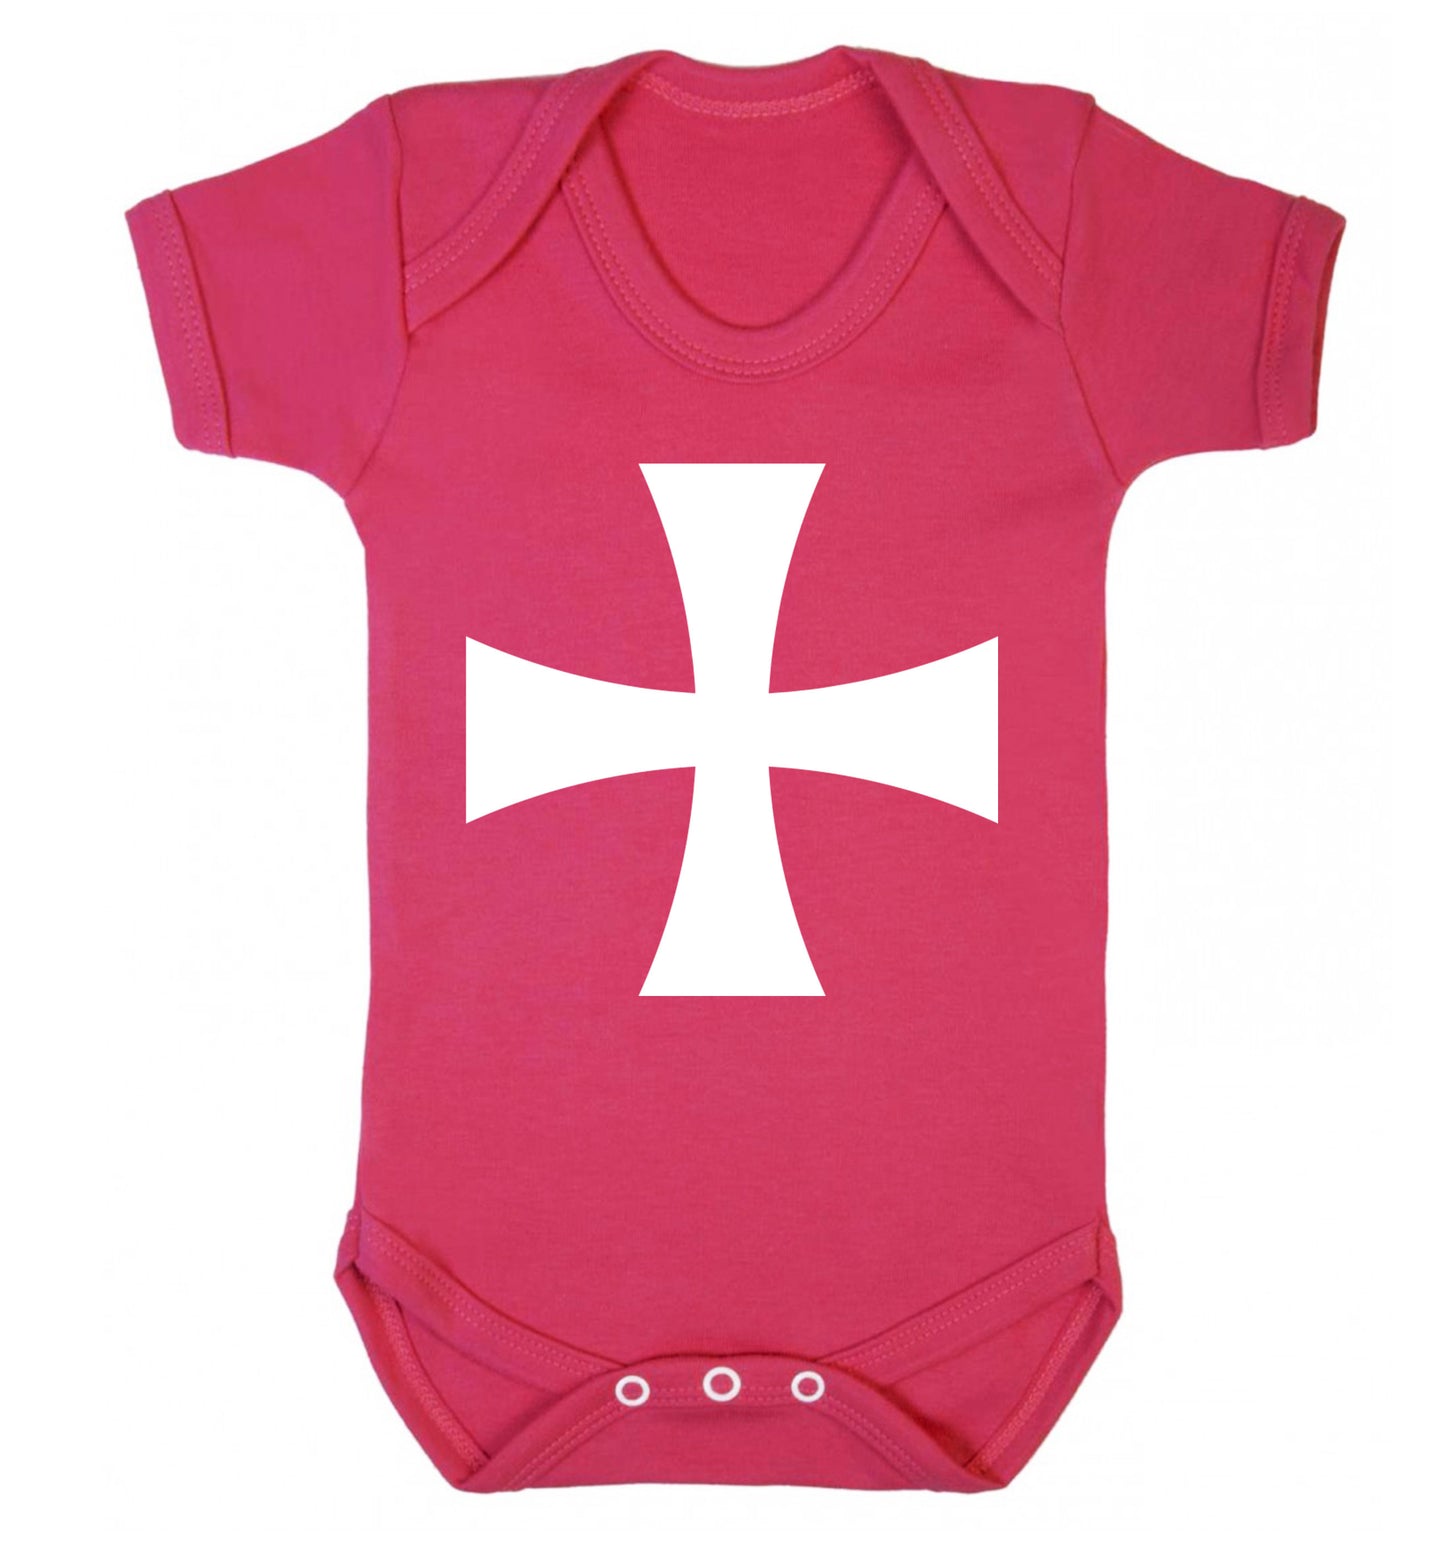 Knights Templar cross Baby Vest dark pink 18-24 months